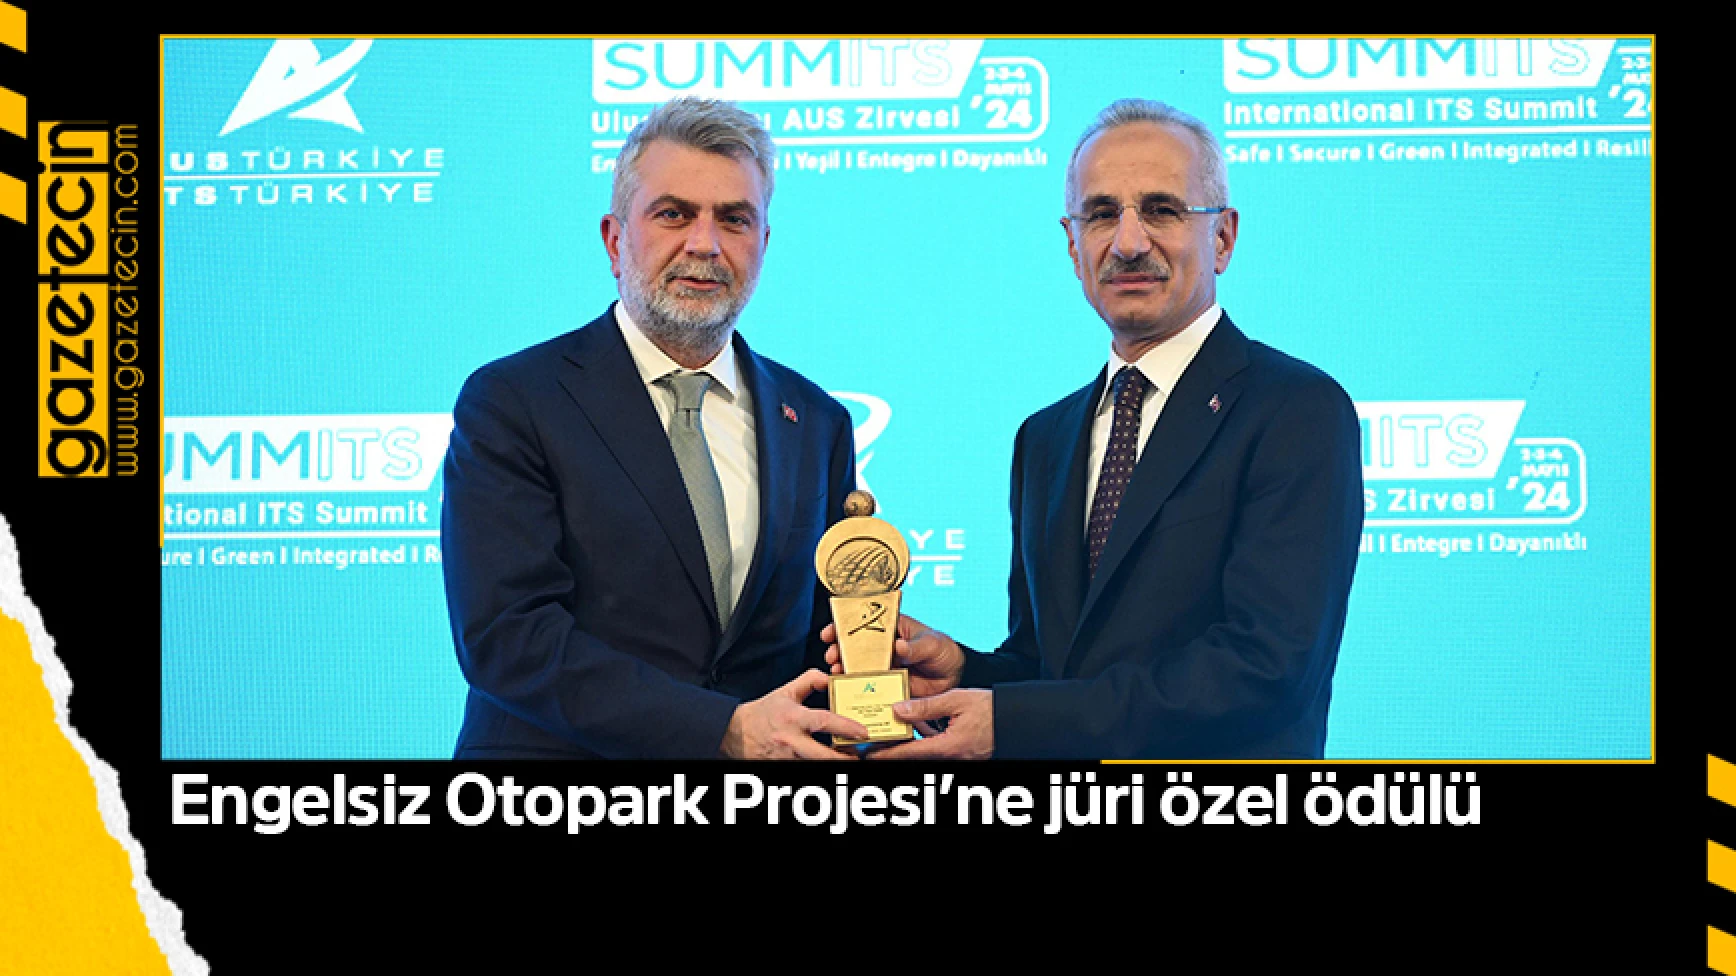 Engelsiz Otopark Projesi’ne jüri özel ödülü